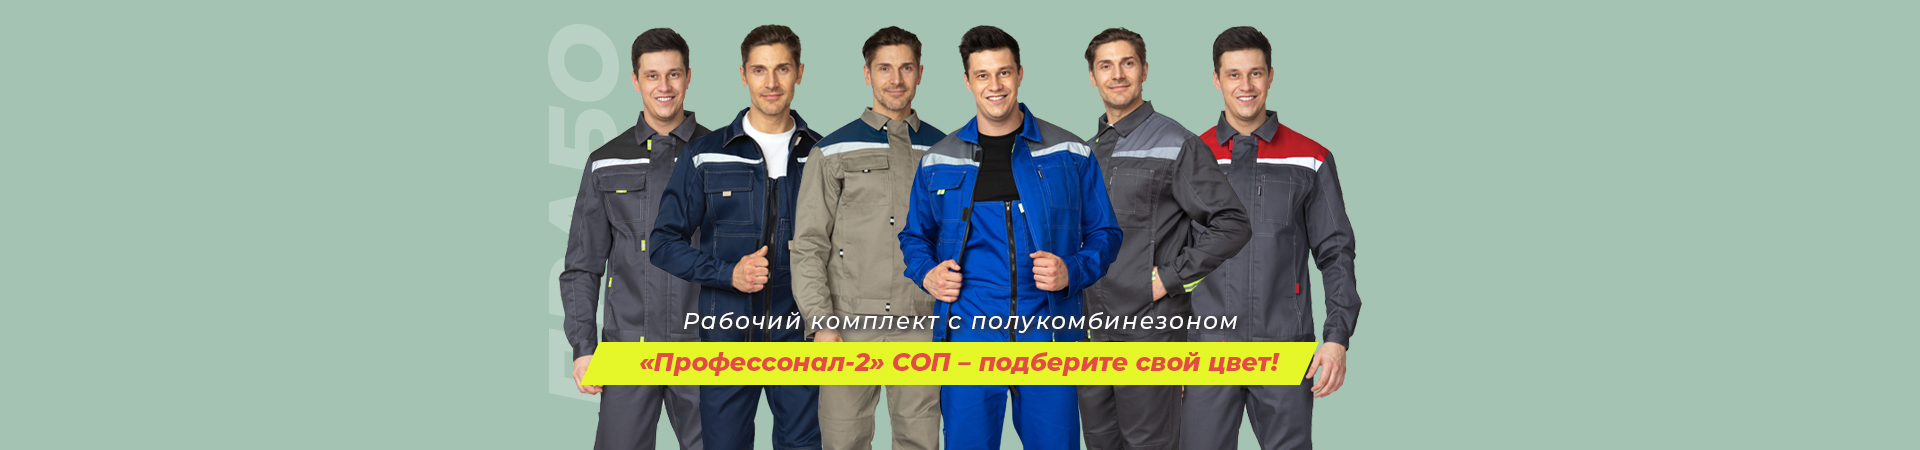 Когда цвет имеет значение! Рабочие летние костюмы «Профессионал-2» СОП для защиты от ОПЗ